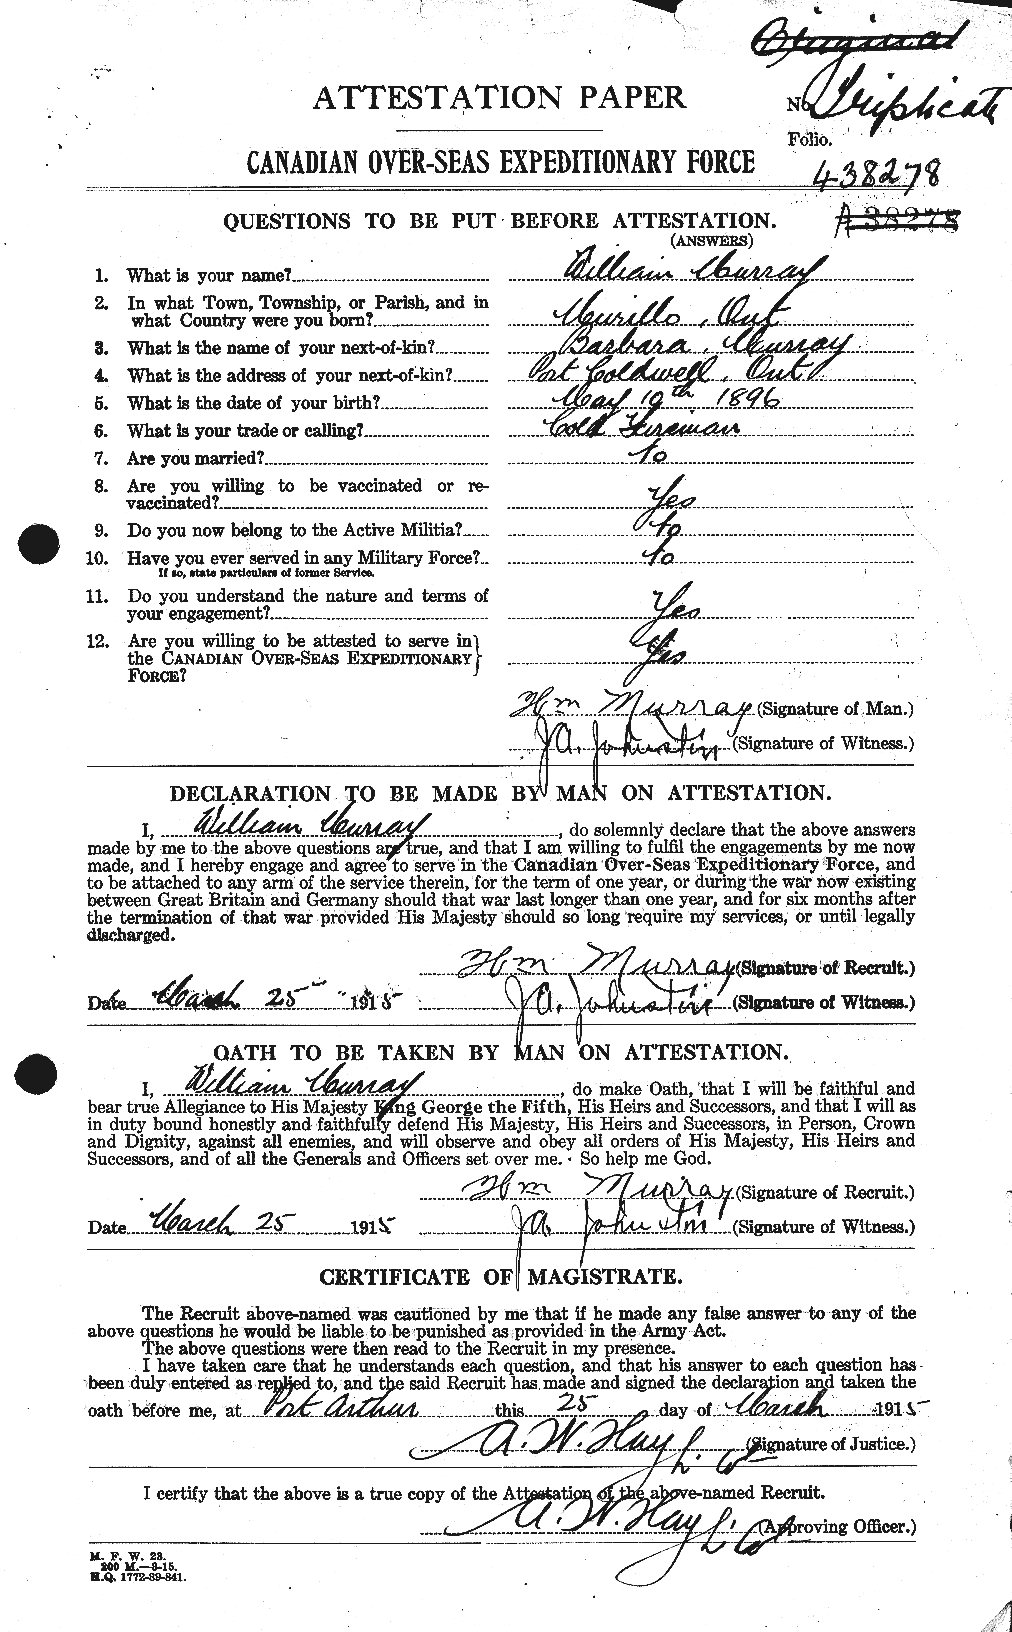 Dossiers du Personnel de la Première Guerre mondiale - CEC 514222a